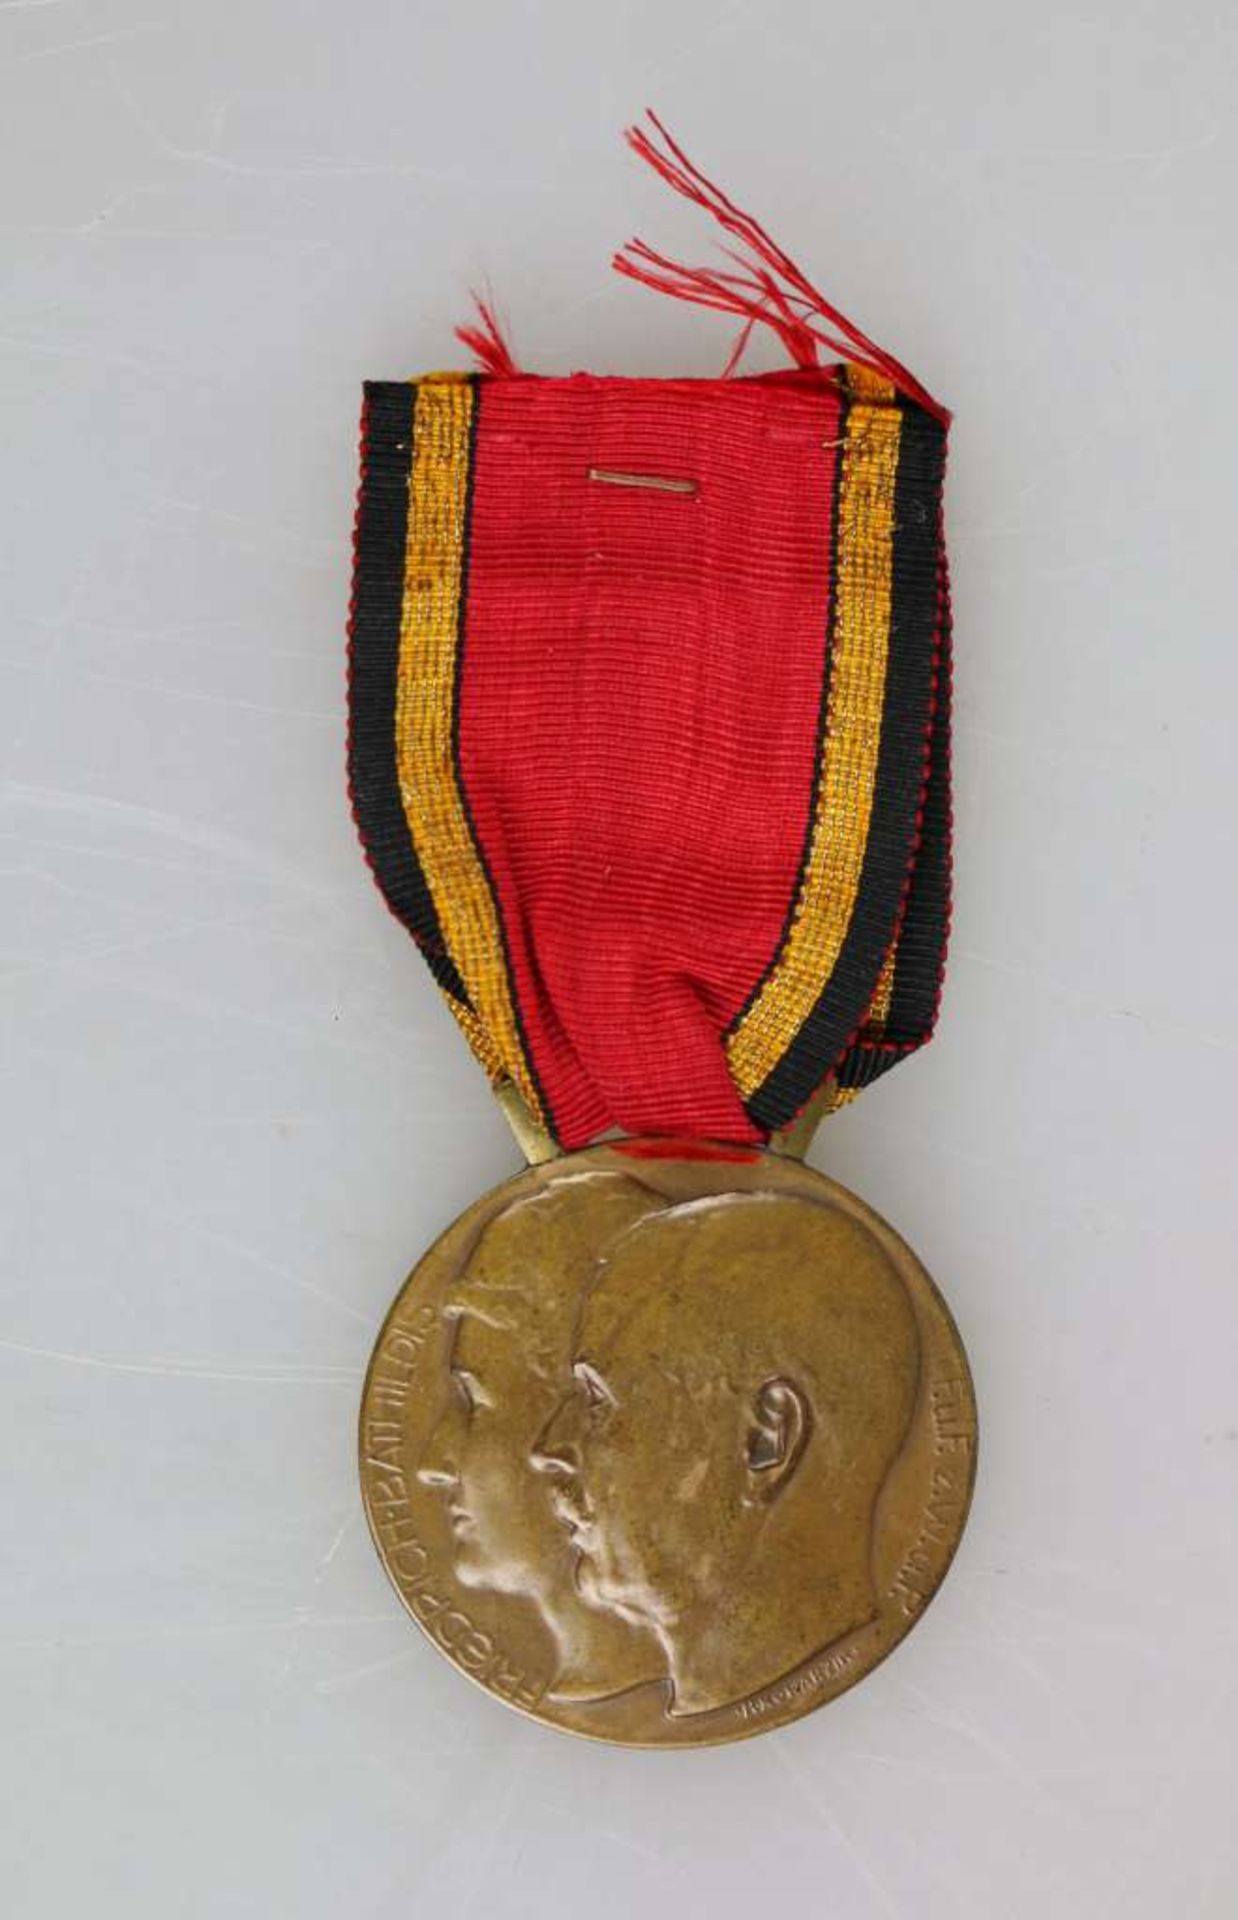 Waldeck-Pyrmont Friedrich-Bathildis-Medaille am Band, Bronze, mit Stempelschneider R. Kowarzik,